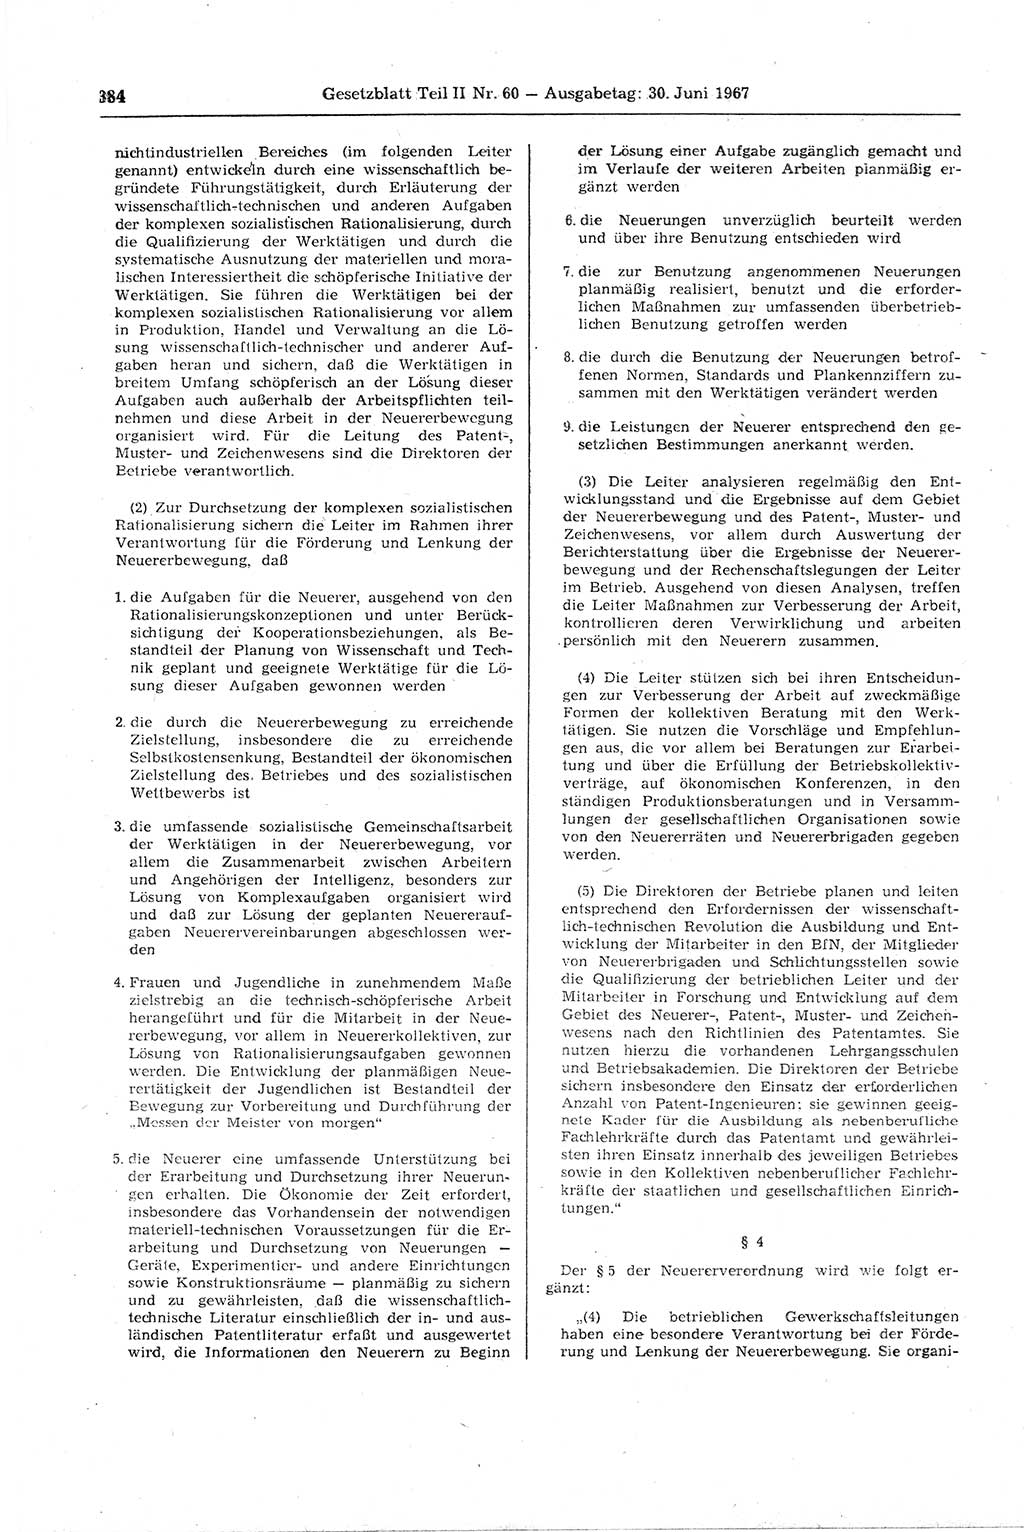 Gesetzblatt (GBl.) der Deutschen Demokratischen Republik (DDR) Teil ⅠⅠ 1967, Seite 384 (GBl. DDR ⅠⅠ 1967, S. 384)